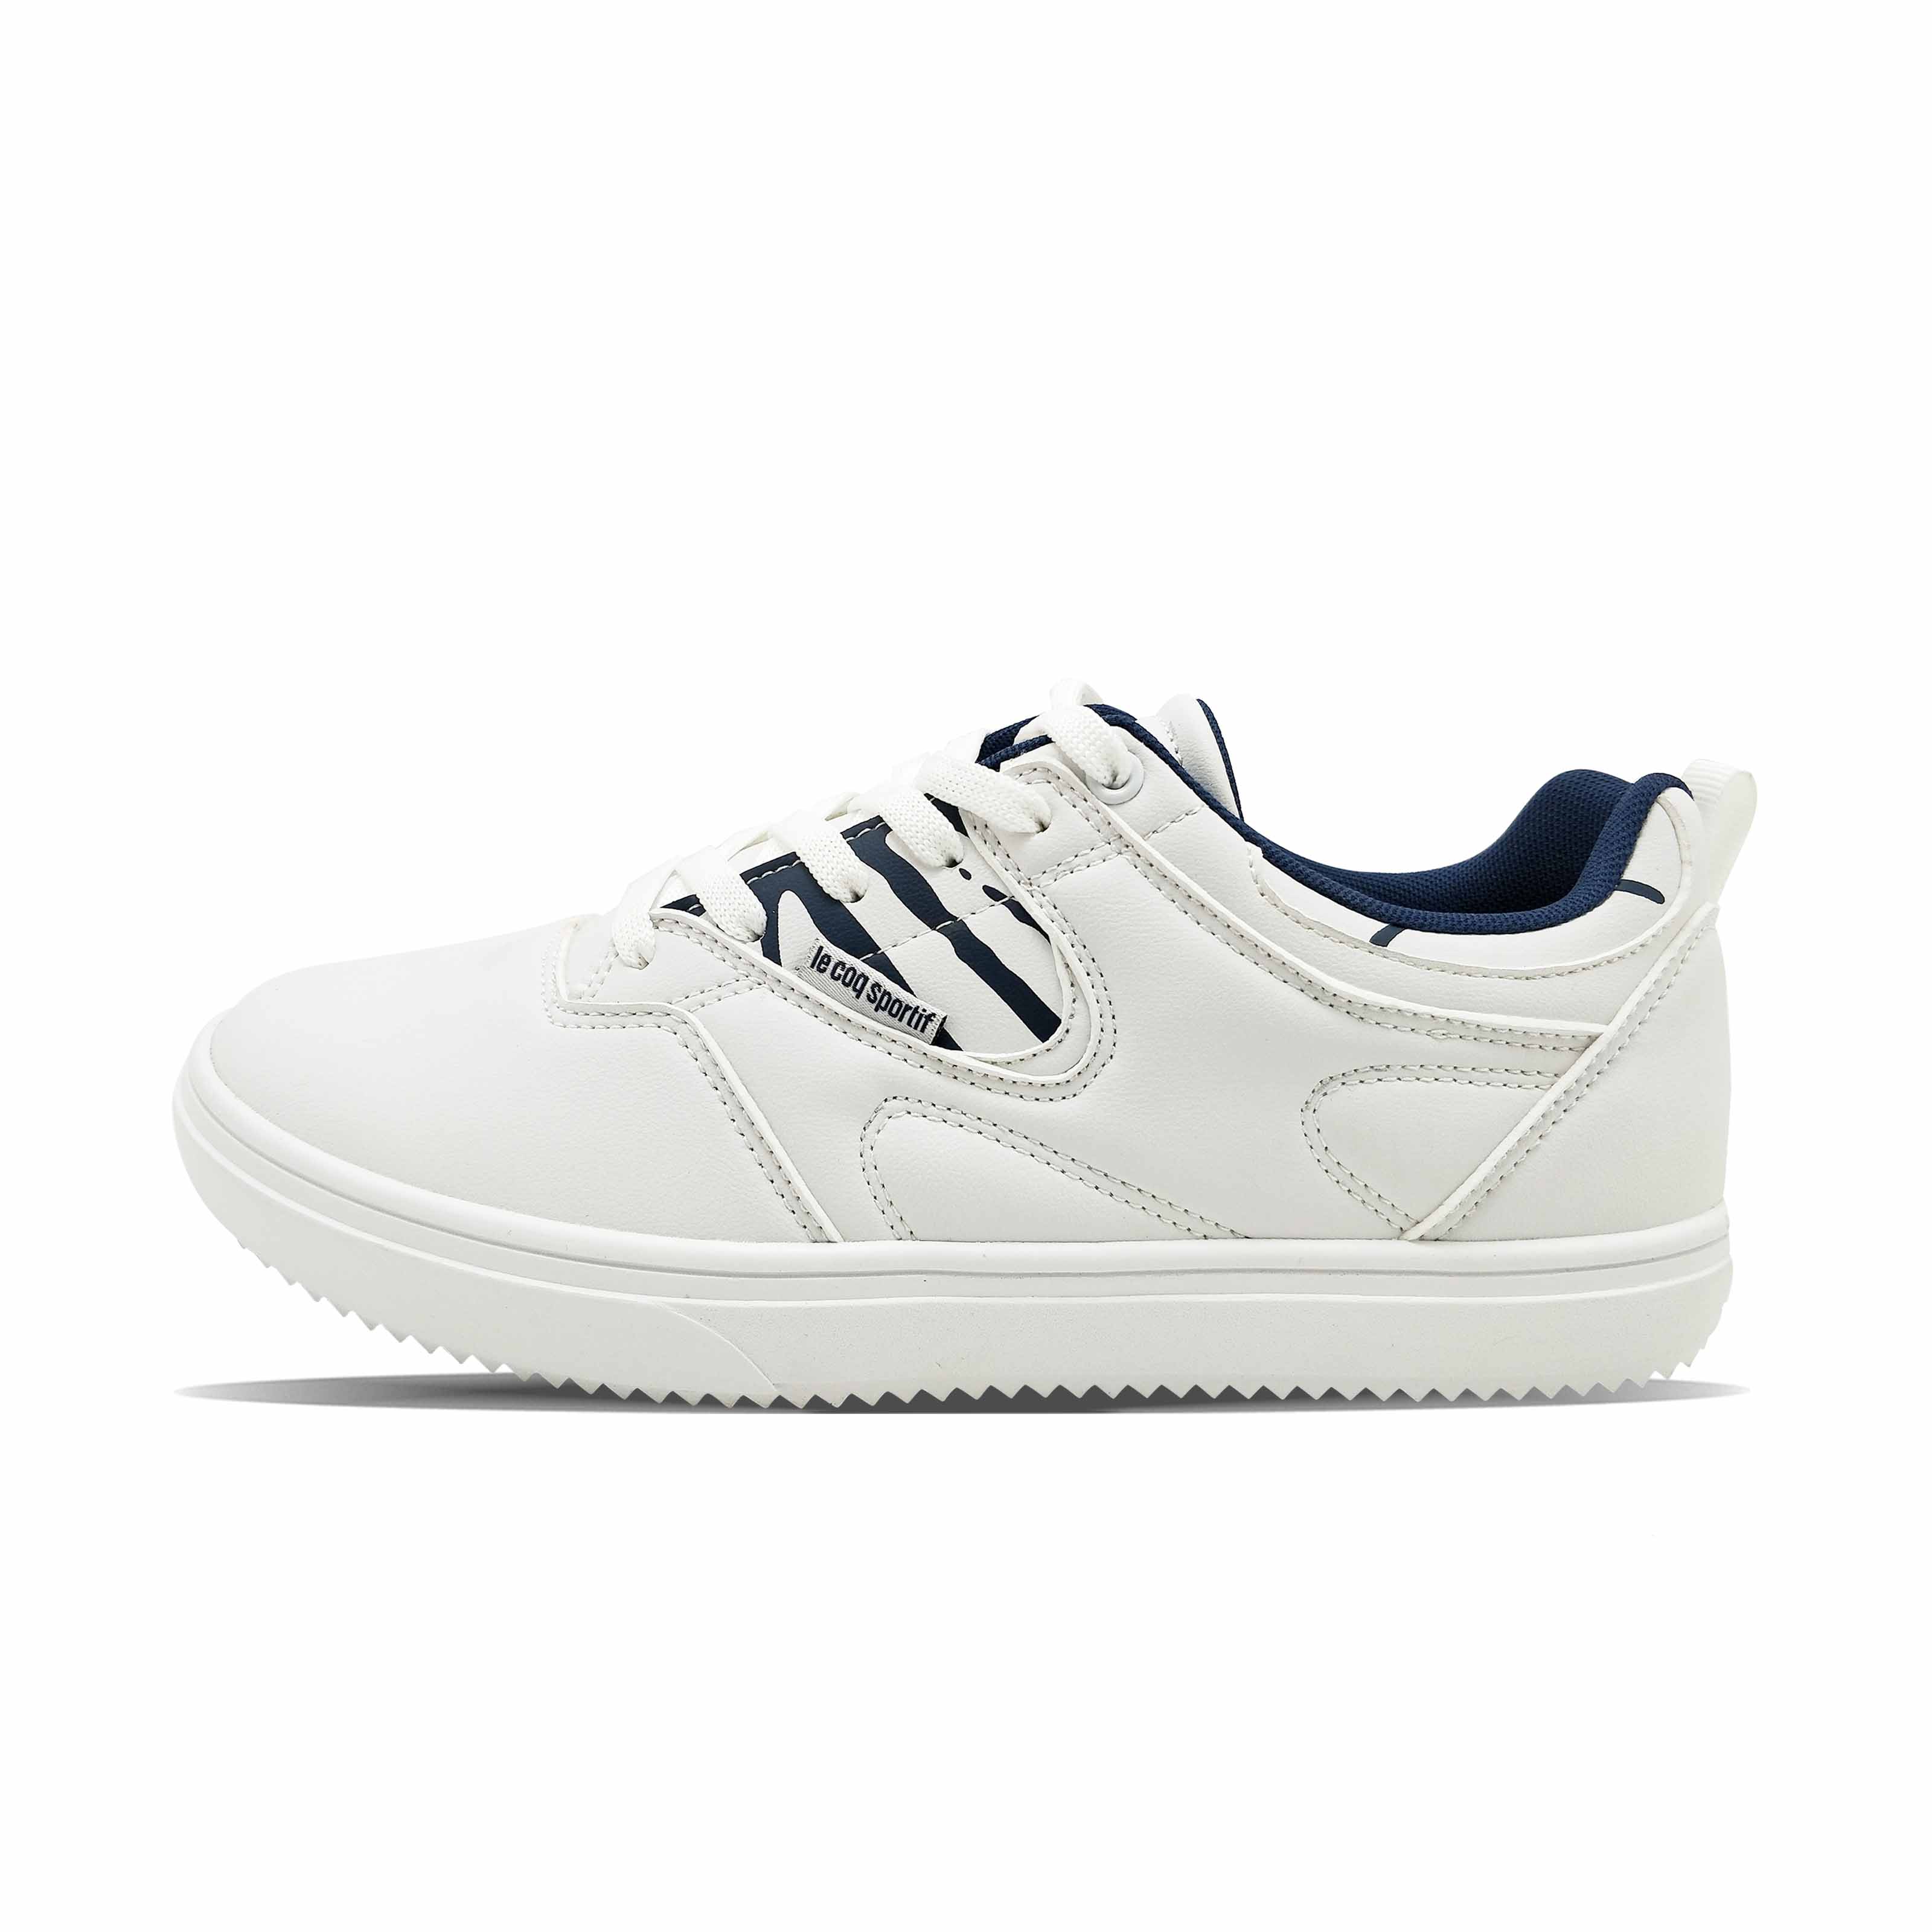 Λευκό μπλε Lace-up Zebra Pattern Business Casual ανδρικά παπούτσια